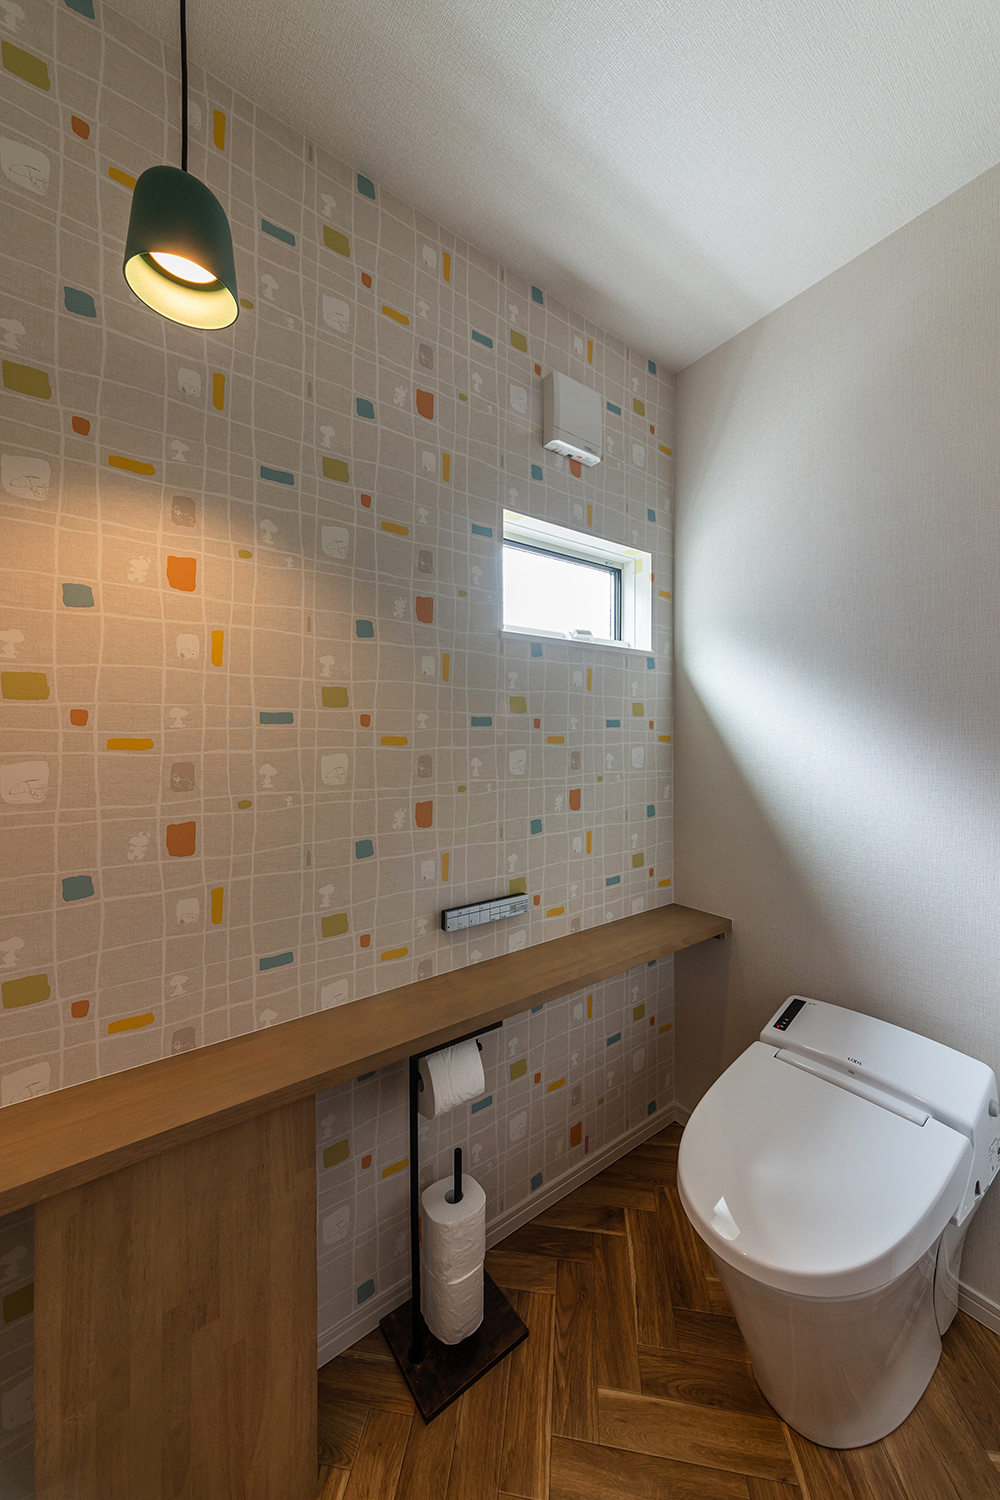 カラフルなクロスと温かみのあるヘリンボーン床が心ときめくトイレ。<br />
暮らしに彩りを添える素敵な空間に仕上がりました。